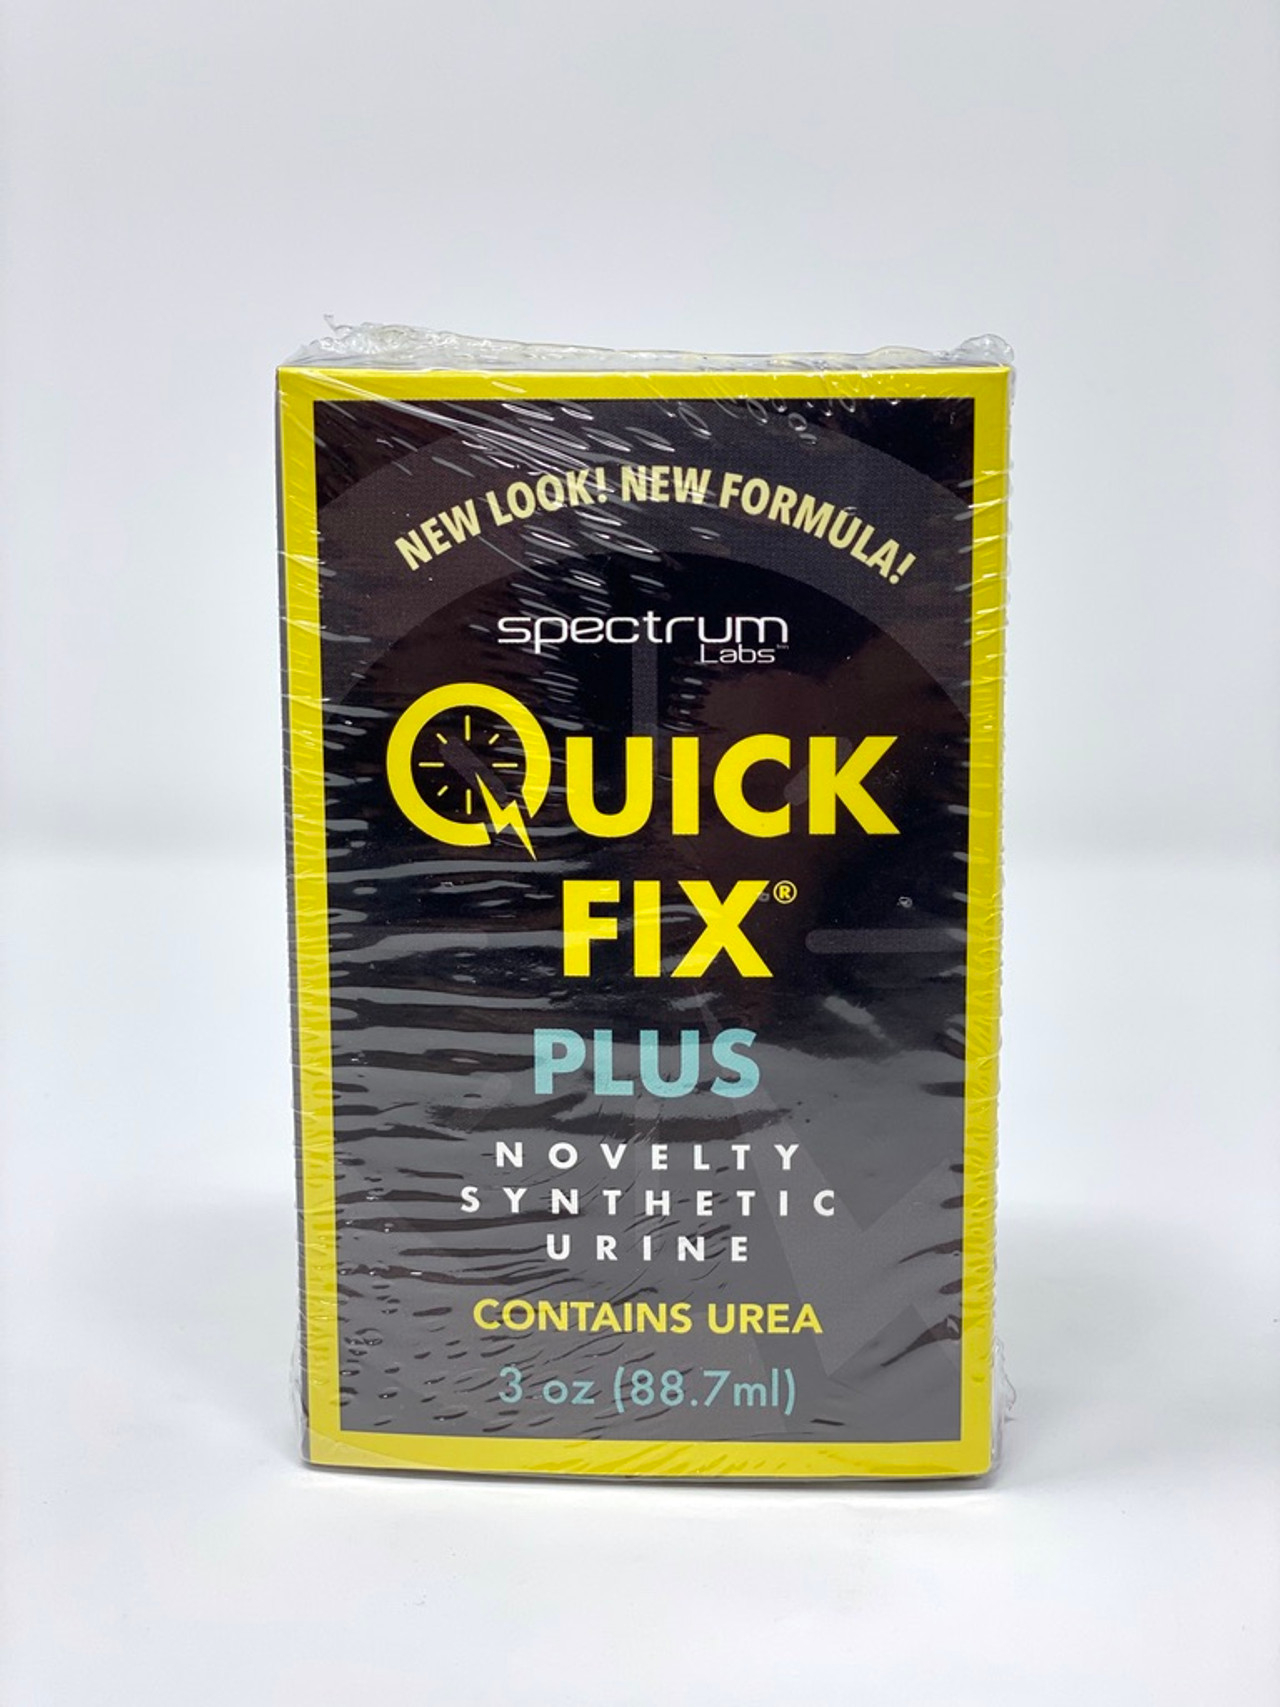 Quick Fix Plus Synthetic Urine Purchase Spectrum Quick Fix Plus Urine